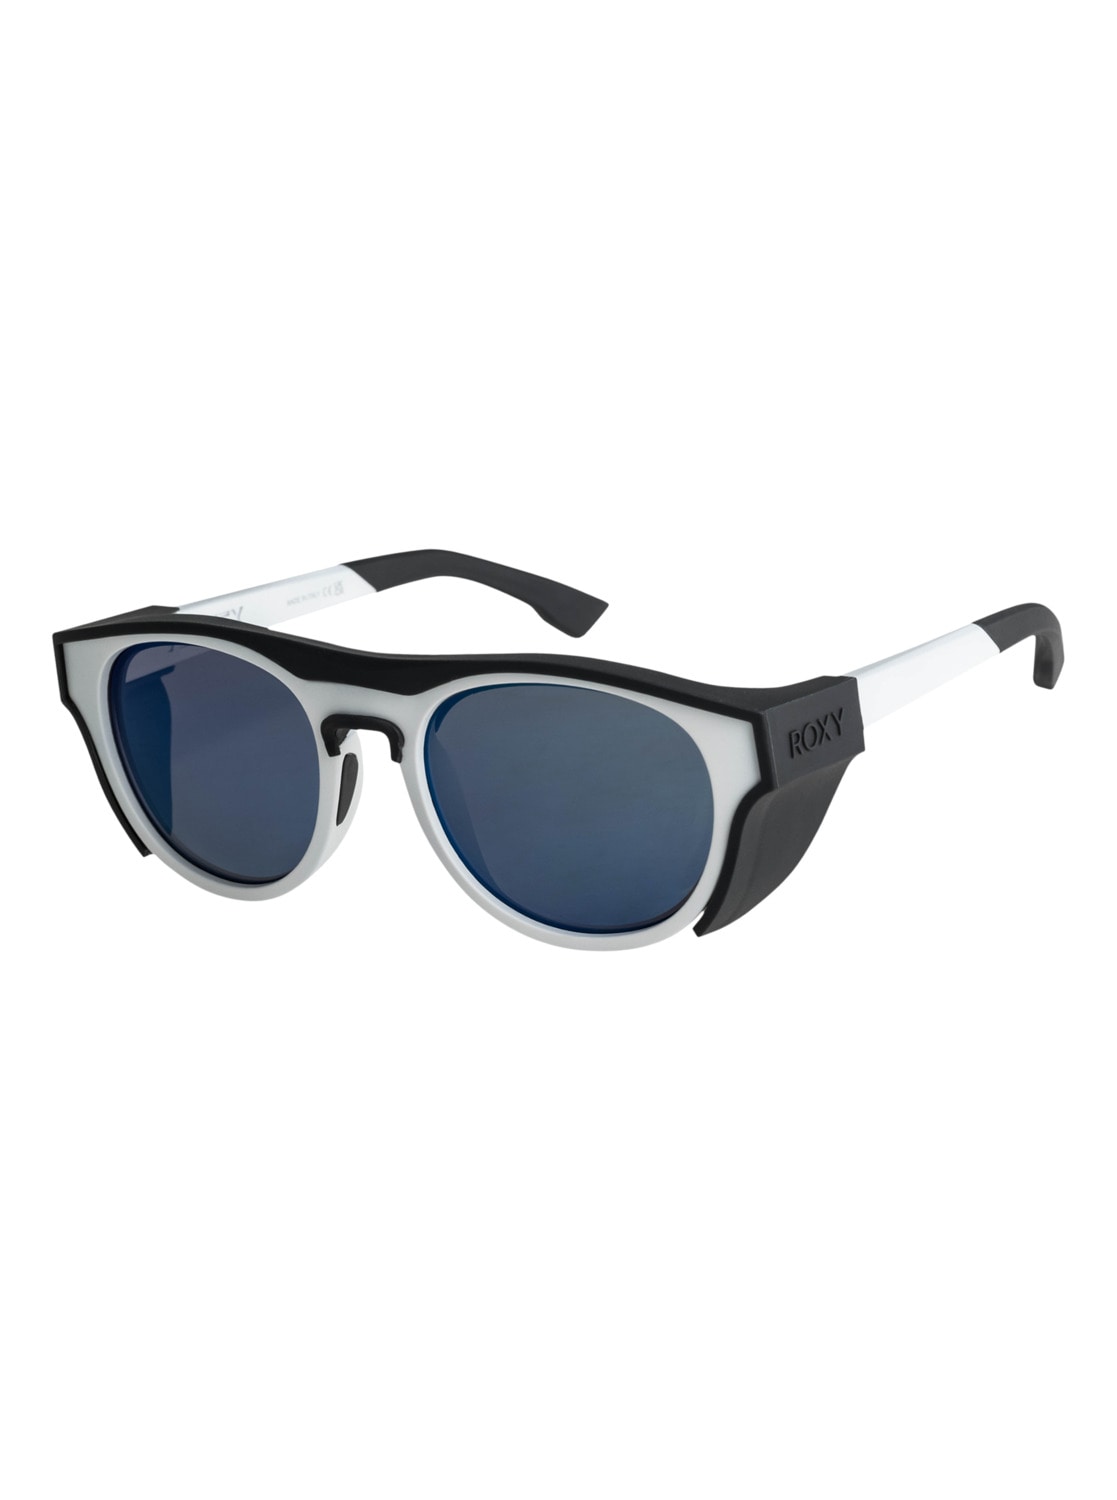 Sonnenbrillen Damen SALE & Outlet BAUR Angebote ▷ | günstige